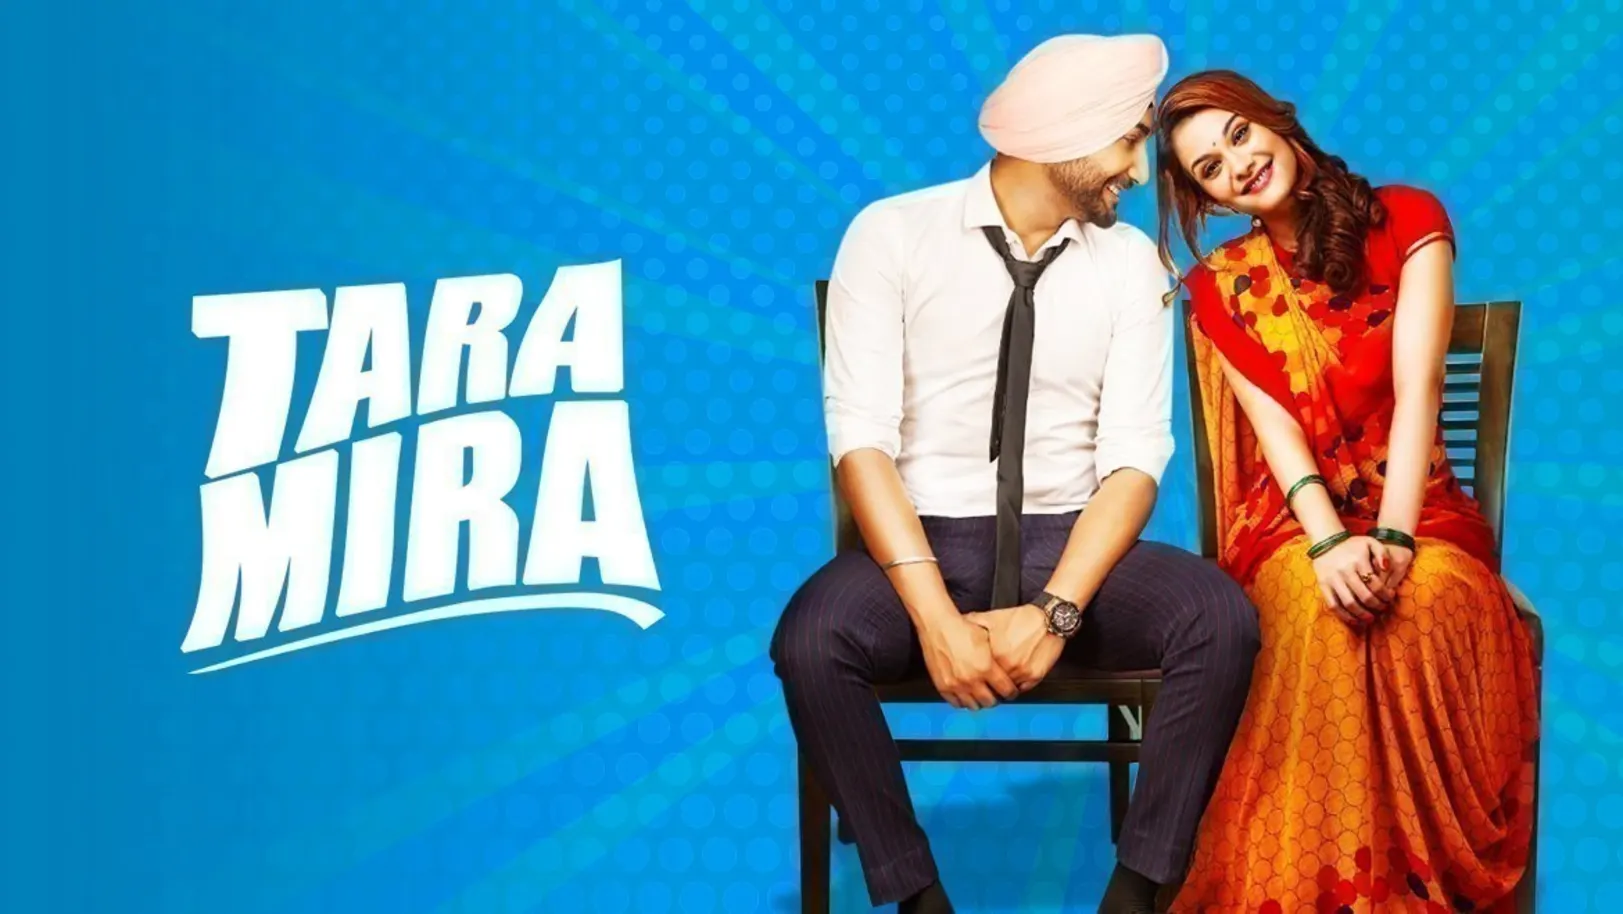 Tara Mira Movie